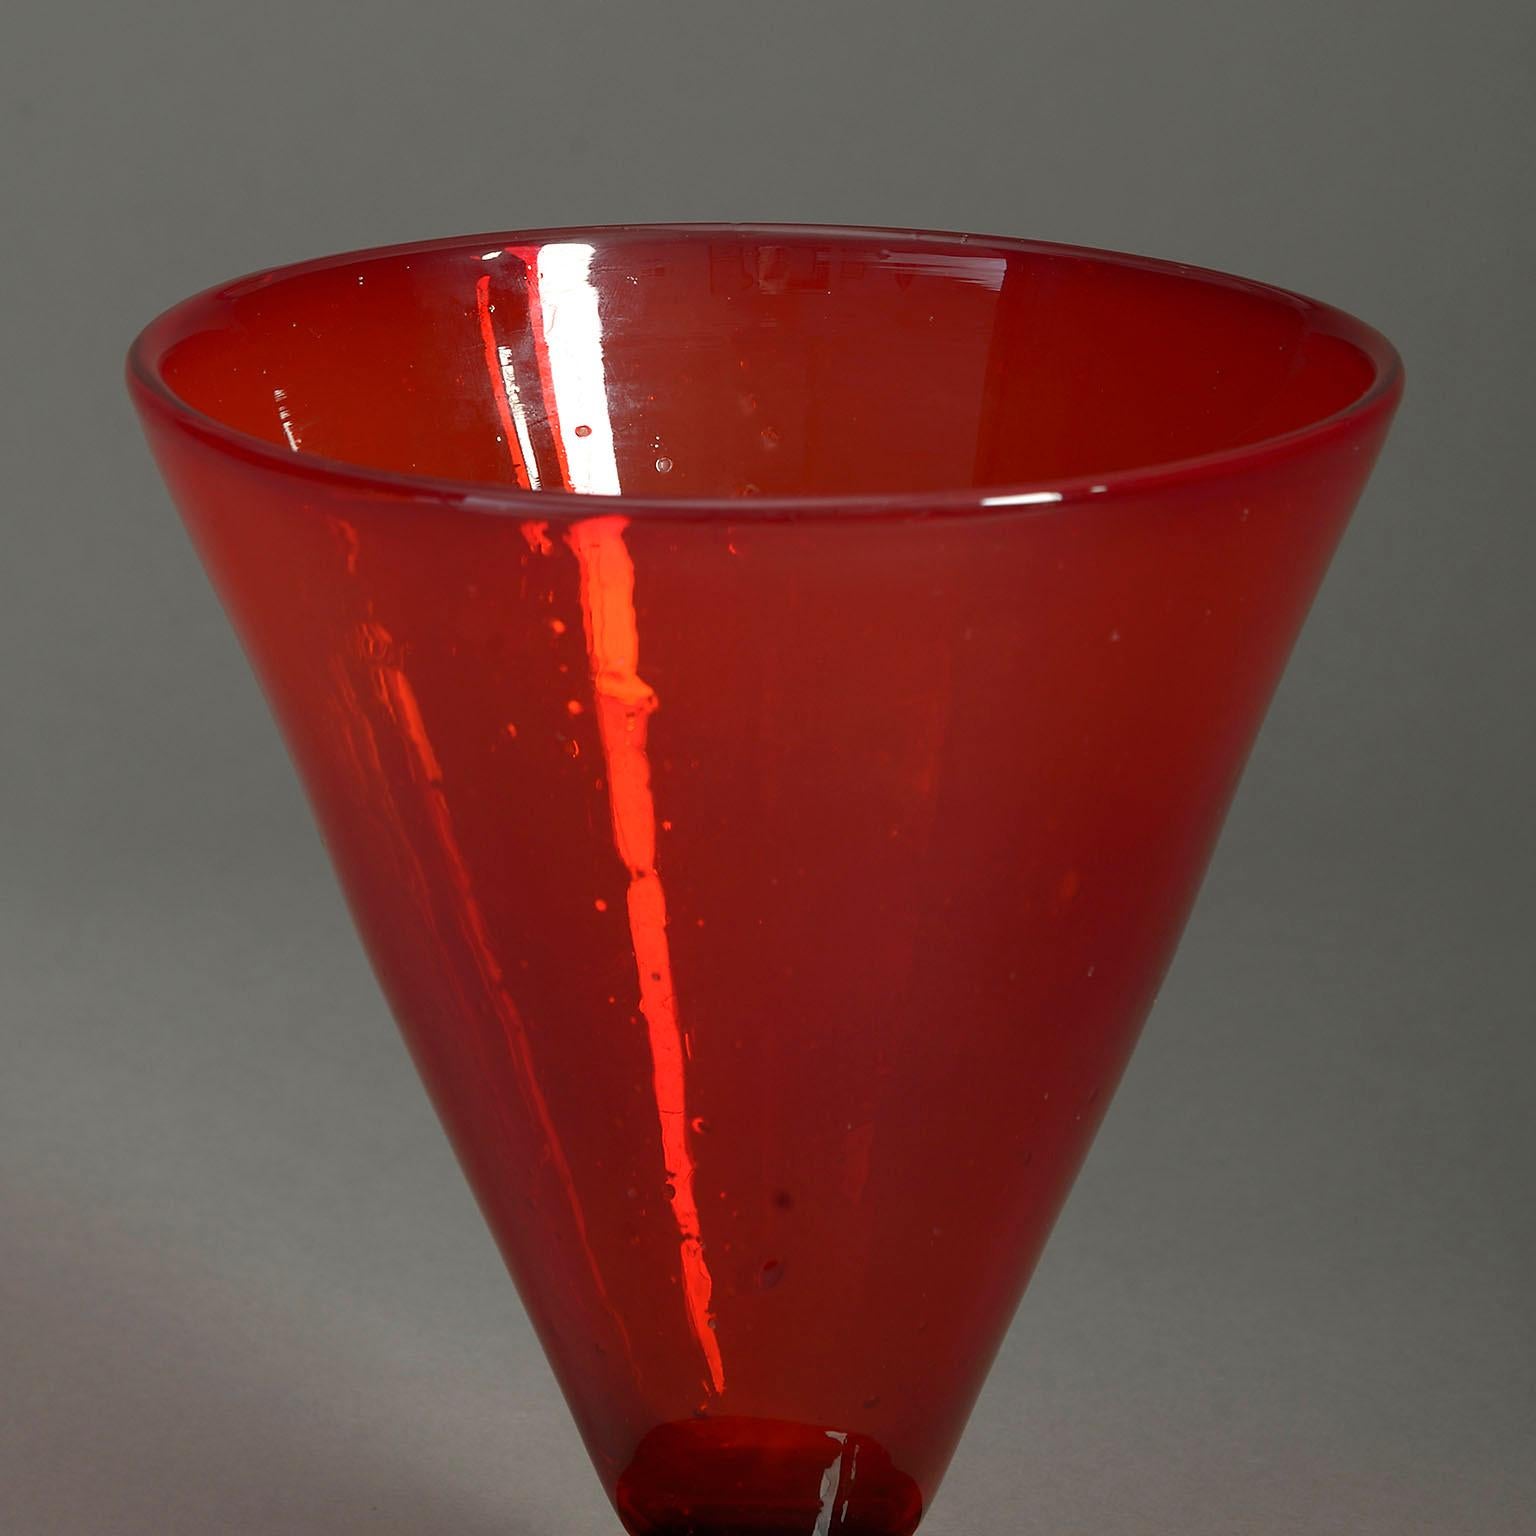 Un vase en verre rouge brillant du début du 20ème siècle, de forme conique, ayant un pied circulaire.

